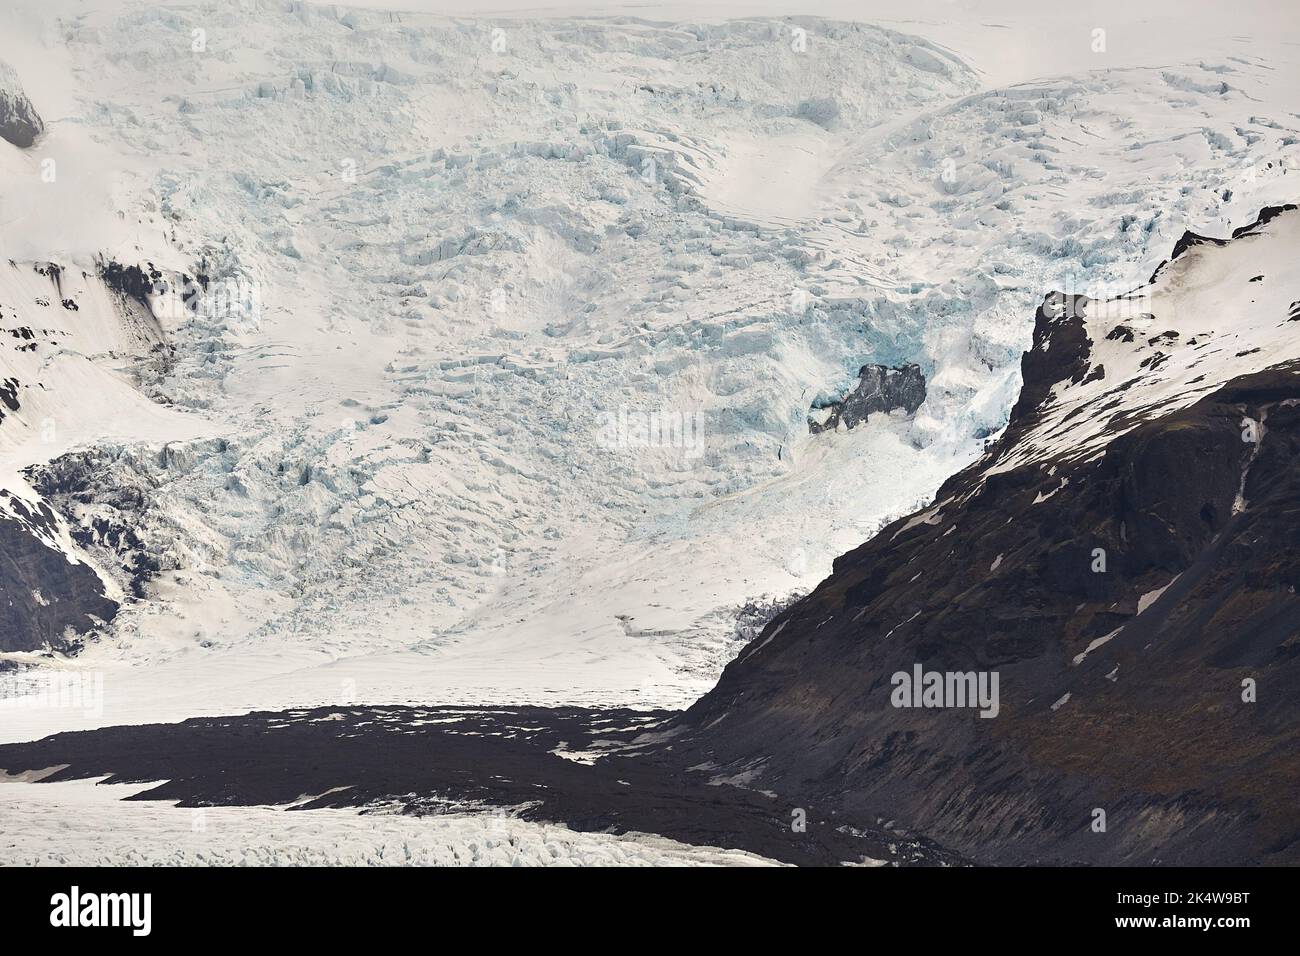 Glacier in Iceland Vantajokull Stock Photo